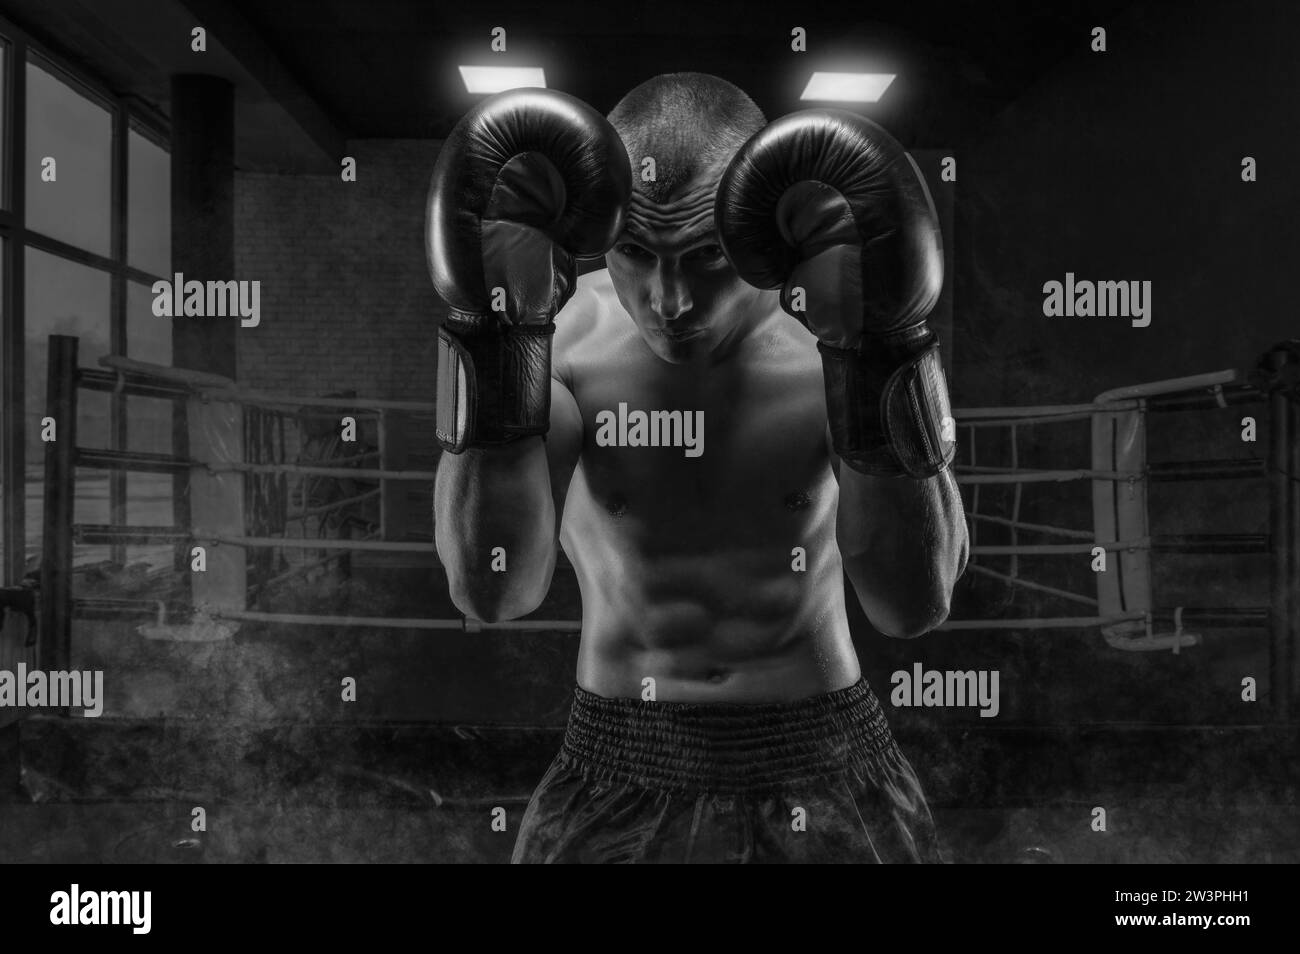 Image d'un boxeur dans la salle de gym. Il se couvre la tête avec des gants. Rack de protection. Arts martiaux mixtes Concept sportif Banque D'Images